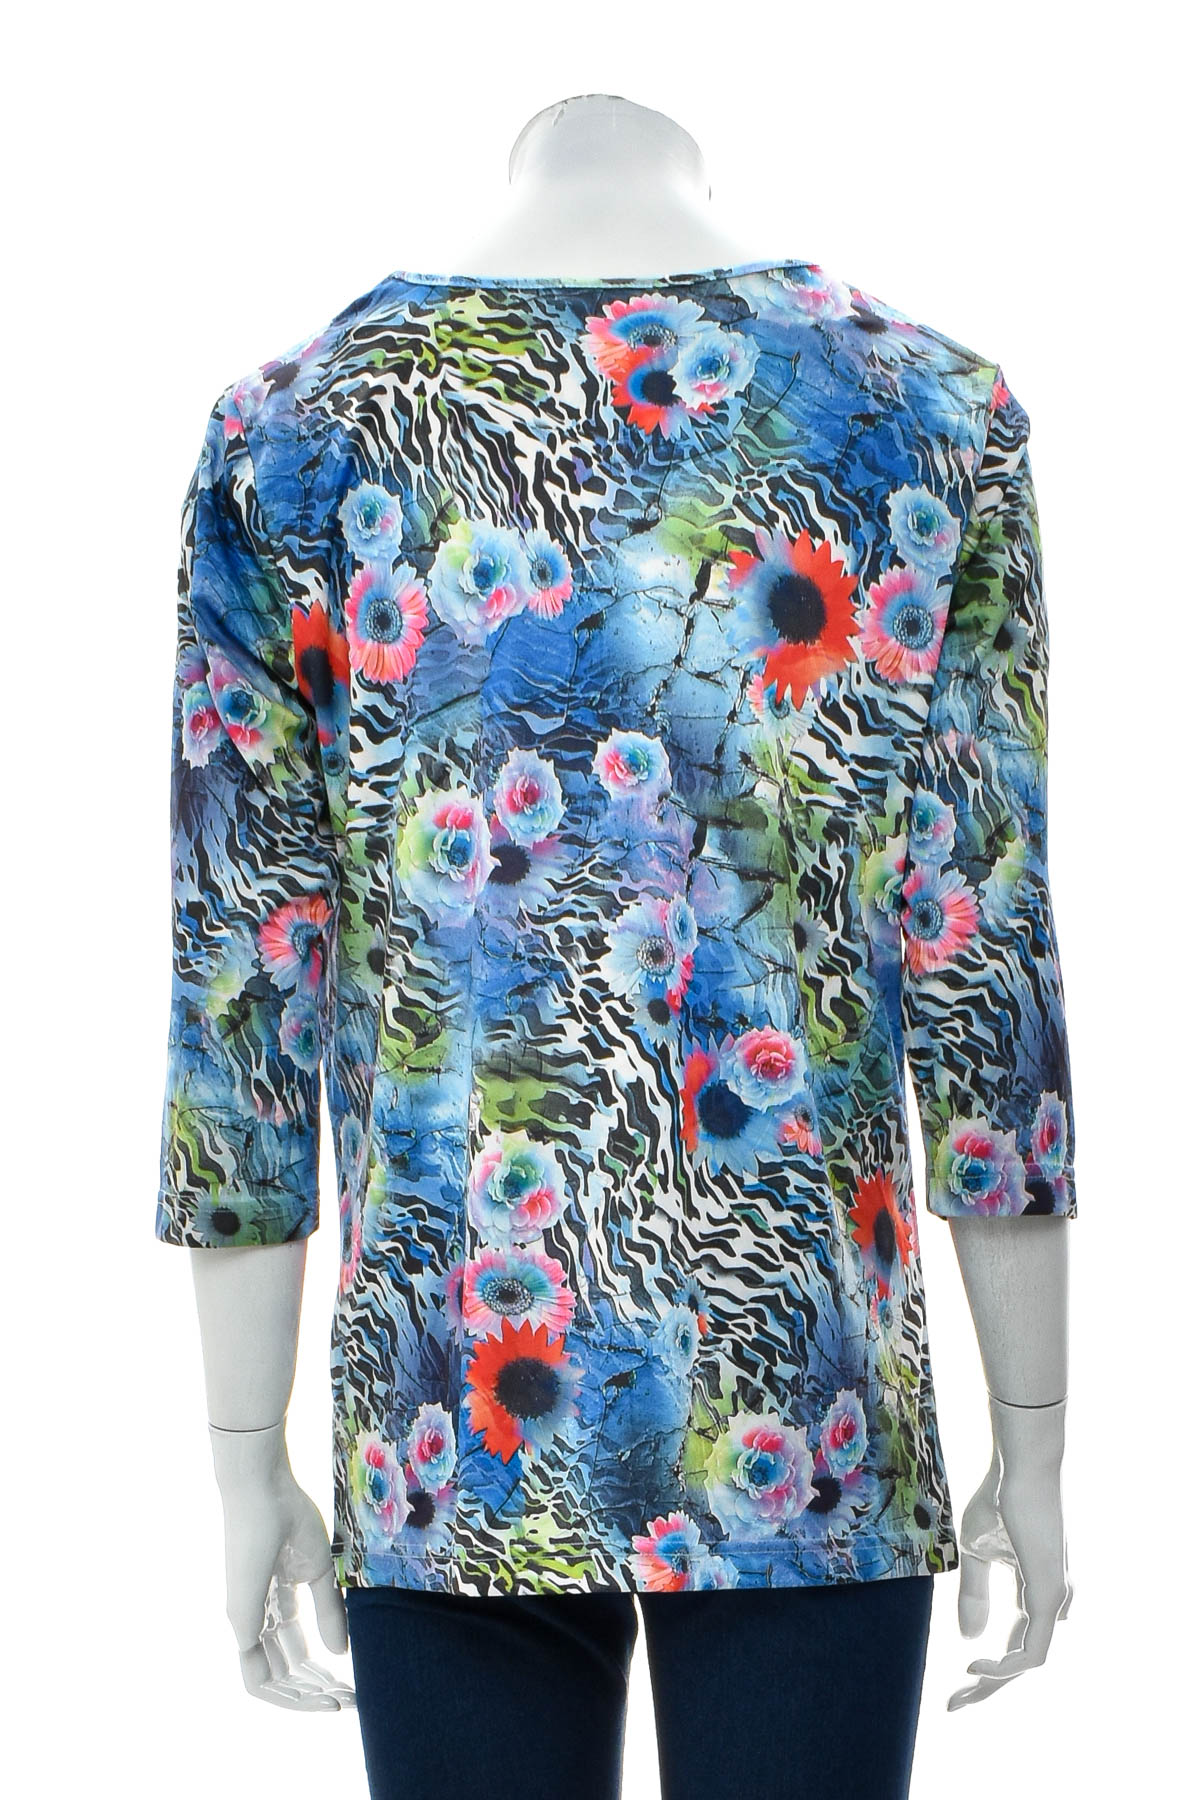 Women's blouse - AproductZ - 1